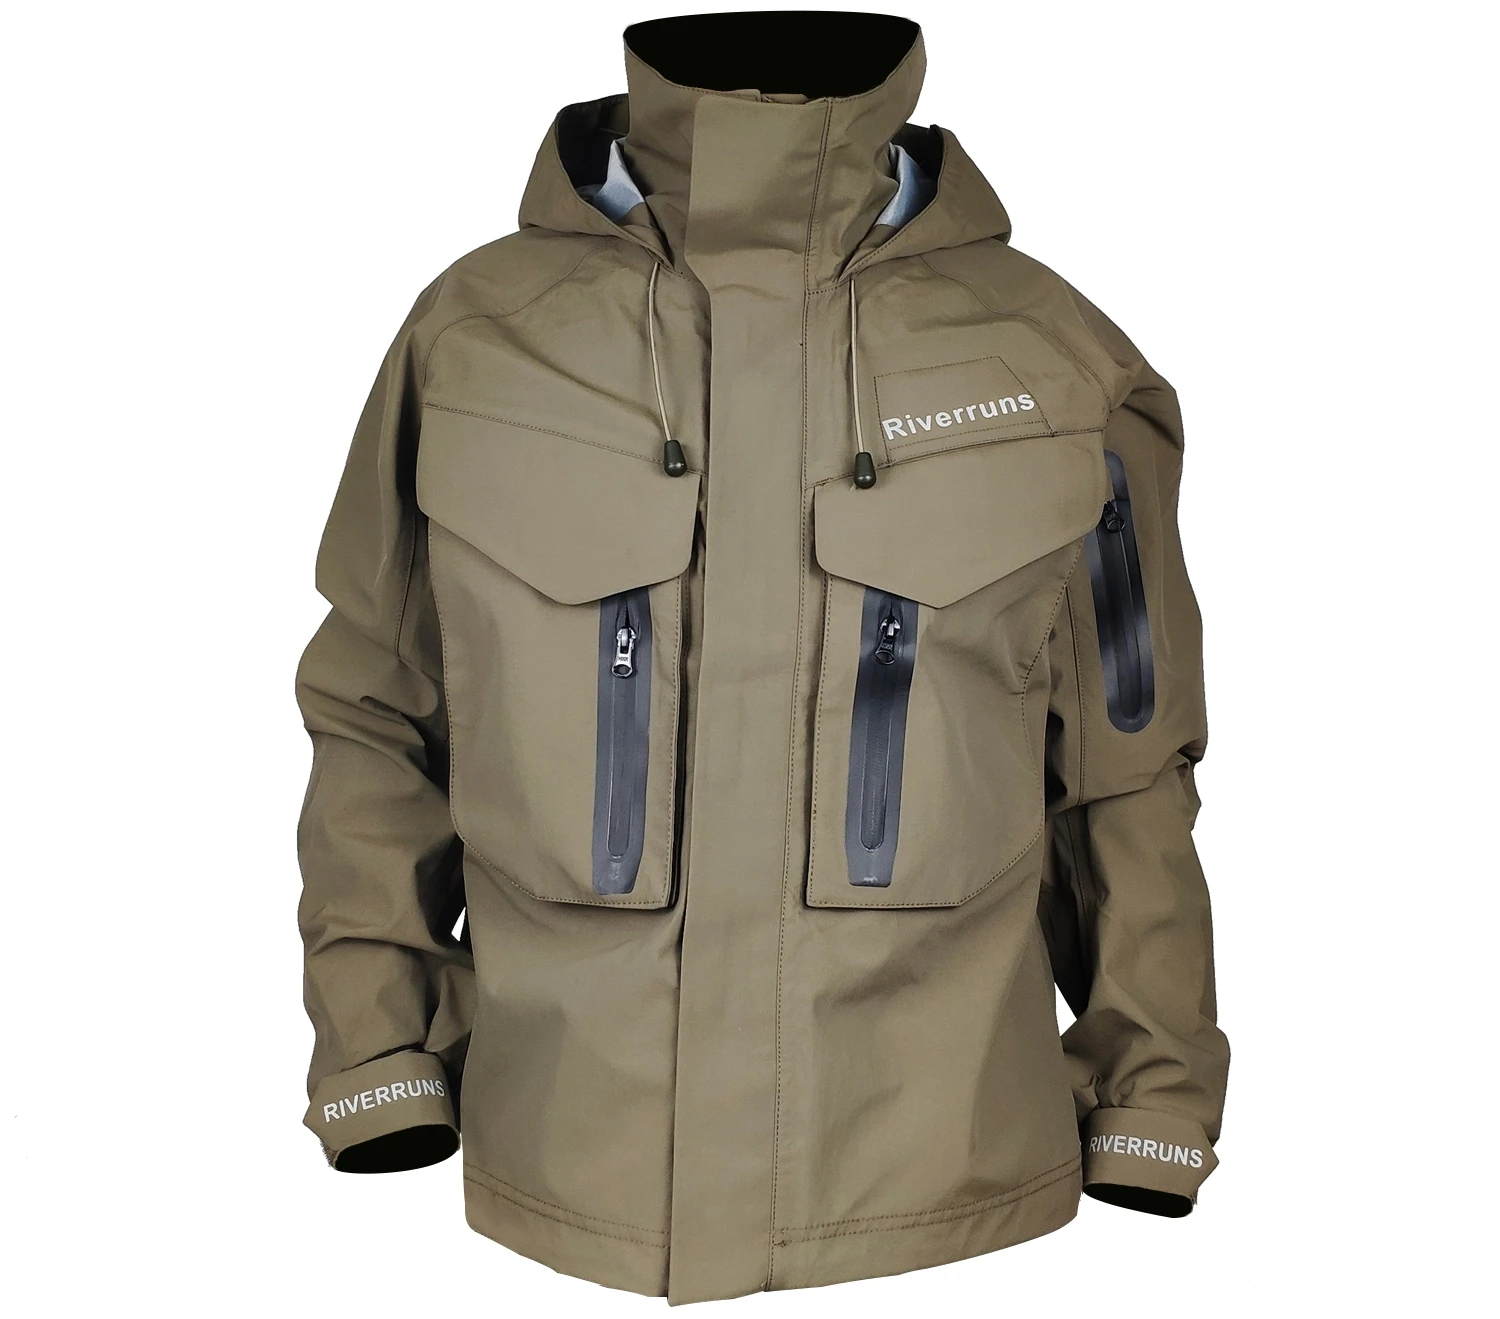 

Куртка рыболовная Riverruns, дышащая водонепроницаемая уличная куртка для рыбалки, пешего туризма, Каяка и охоты